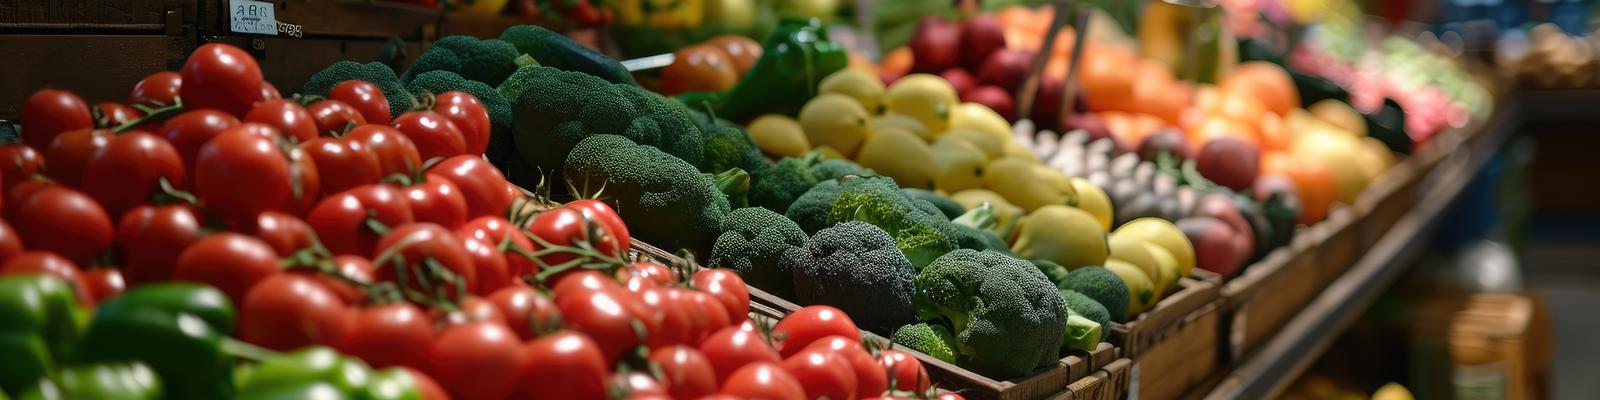 Grönsaker i en butiks grönsaksdisk.